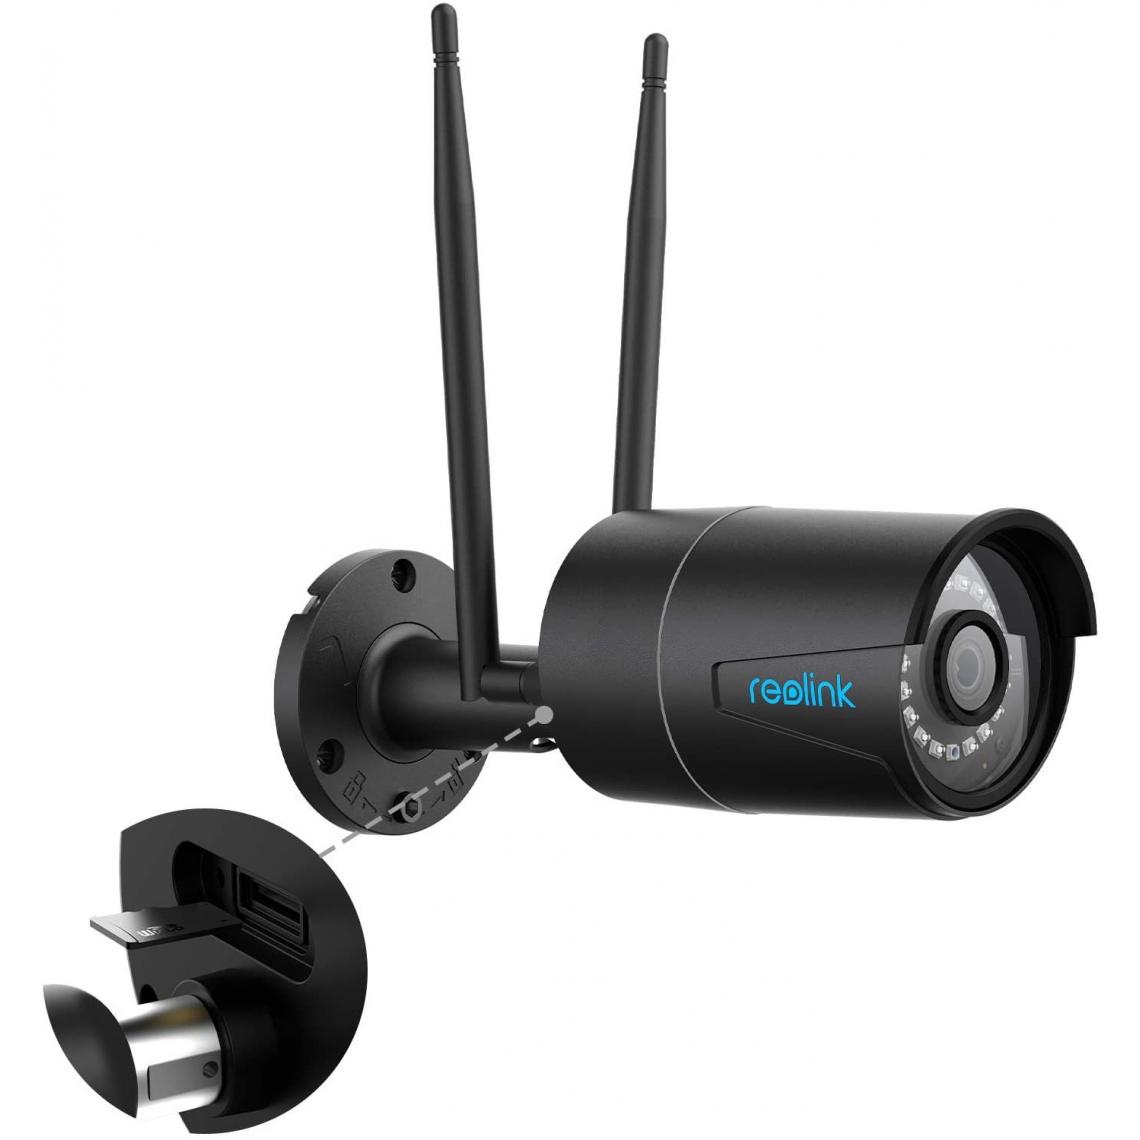 Reolink - Caméra IP Vidéosurveillance - RLC-410W Noir - Caméra Extérieure WiFi 4MP avec Étanchéité IP66, Vision Nocturne à 30m, Détection de Mouvement- RLC-410W Noir - Caméra de surveillance connectée